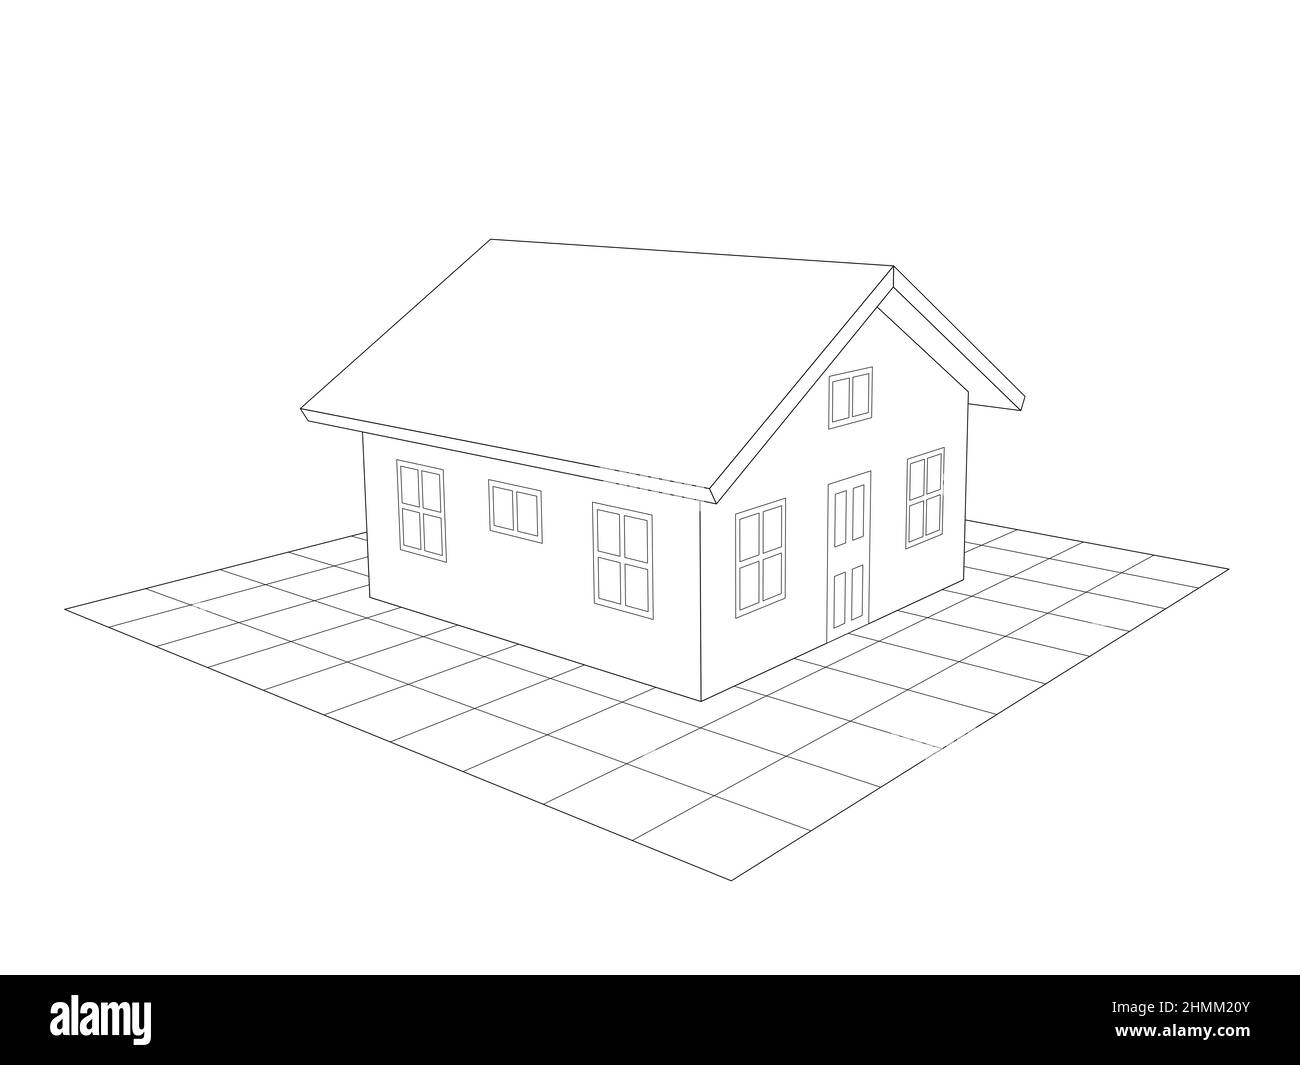 Einfache Design-Perspektive Zeichnung eines einstöckigen Hauses. Schwarze Linien Illustration Stockfoto